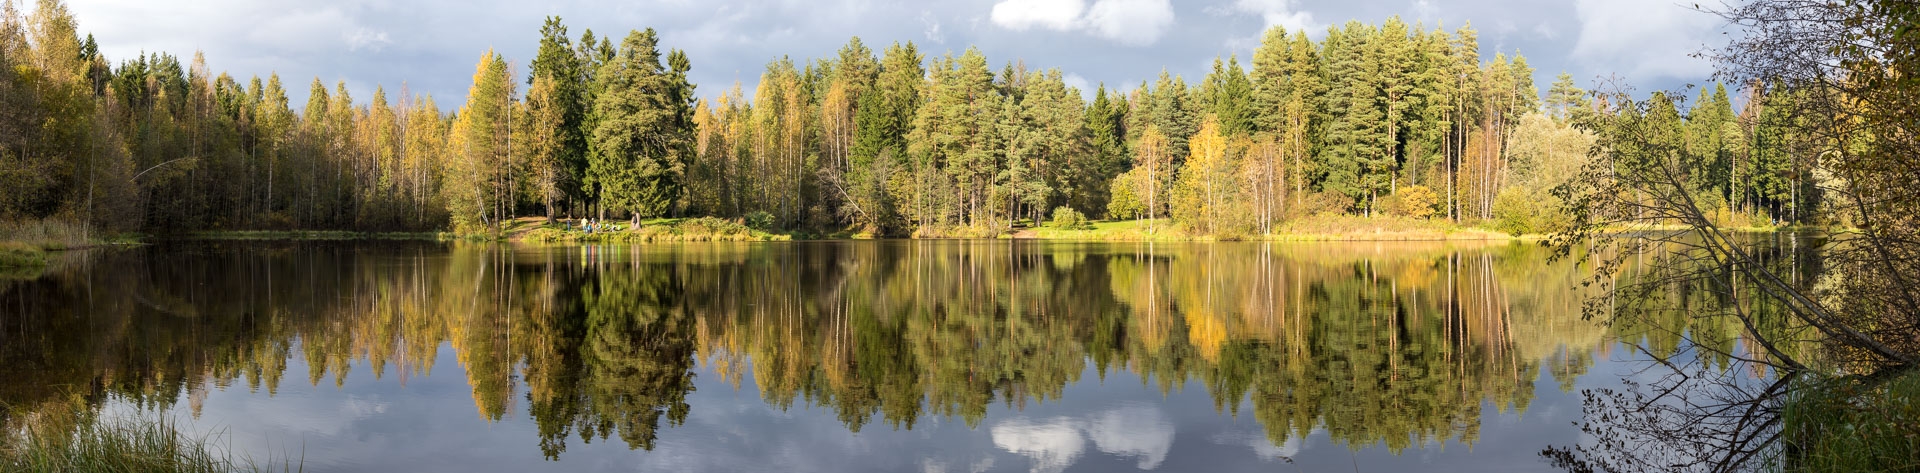 Панорама лесного озера